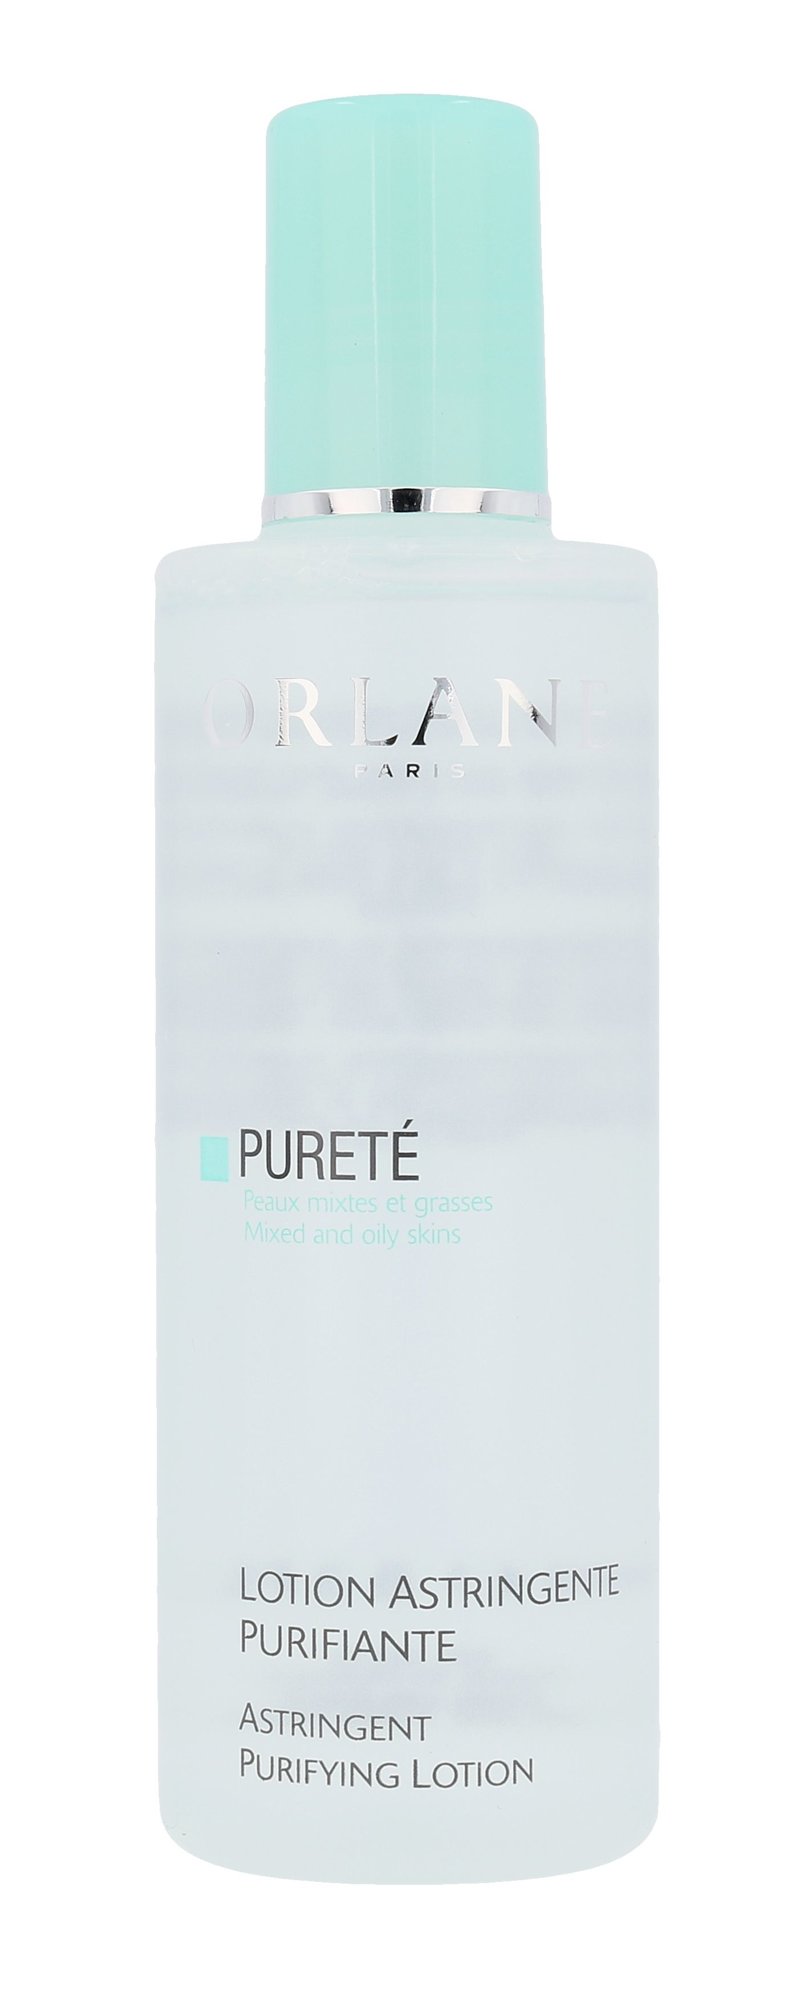 Orlane Pureté Astringent Purifying Lotion 250ml valomasis vanduo veidui (Pažeista pakuotė)